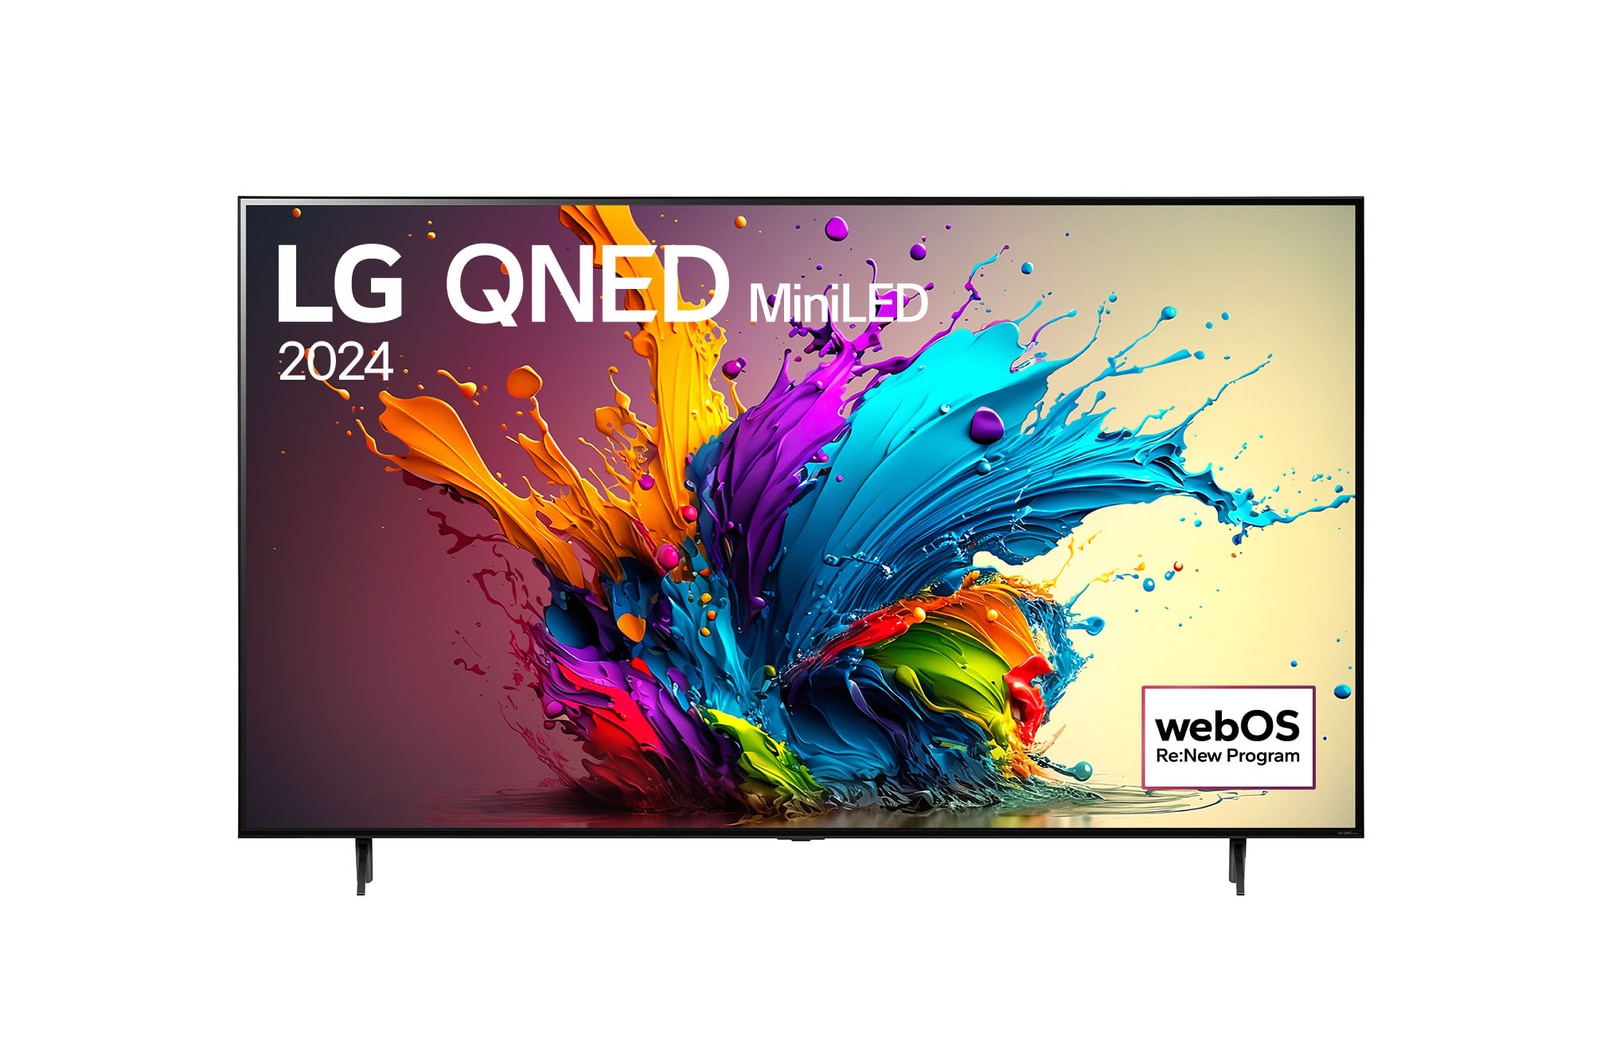 Вид спереди на телевизор LG QNED, QNED90 с текстом LG QNED MiniLED, 2024 и логотипом webOS Re:New Program на экране